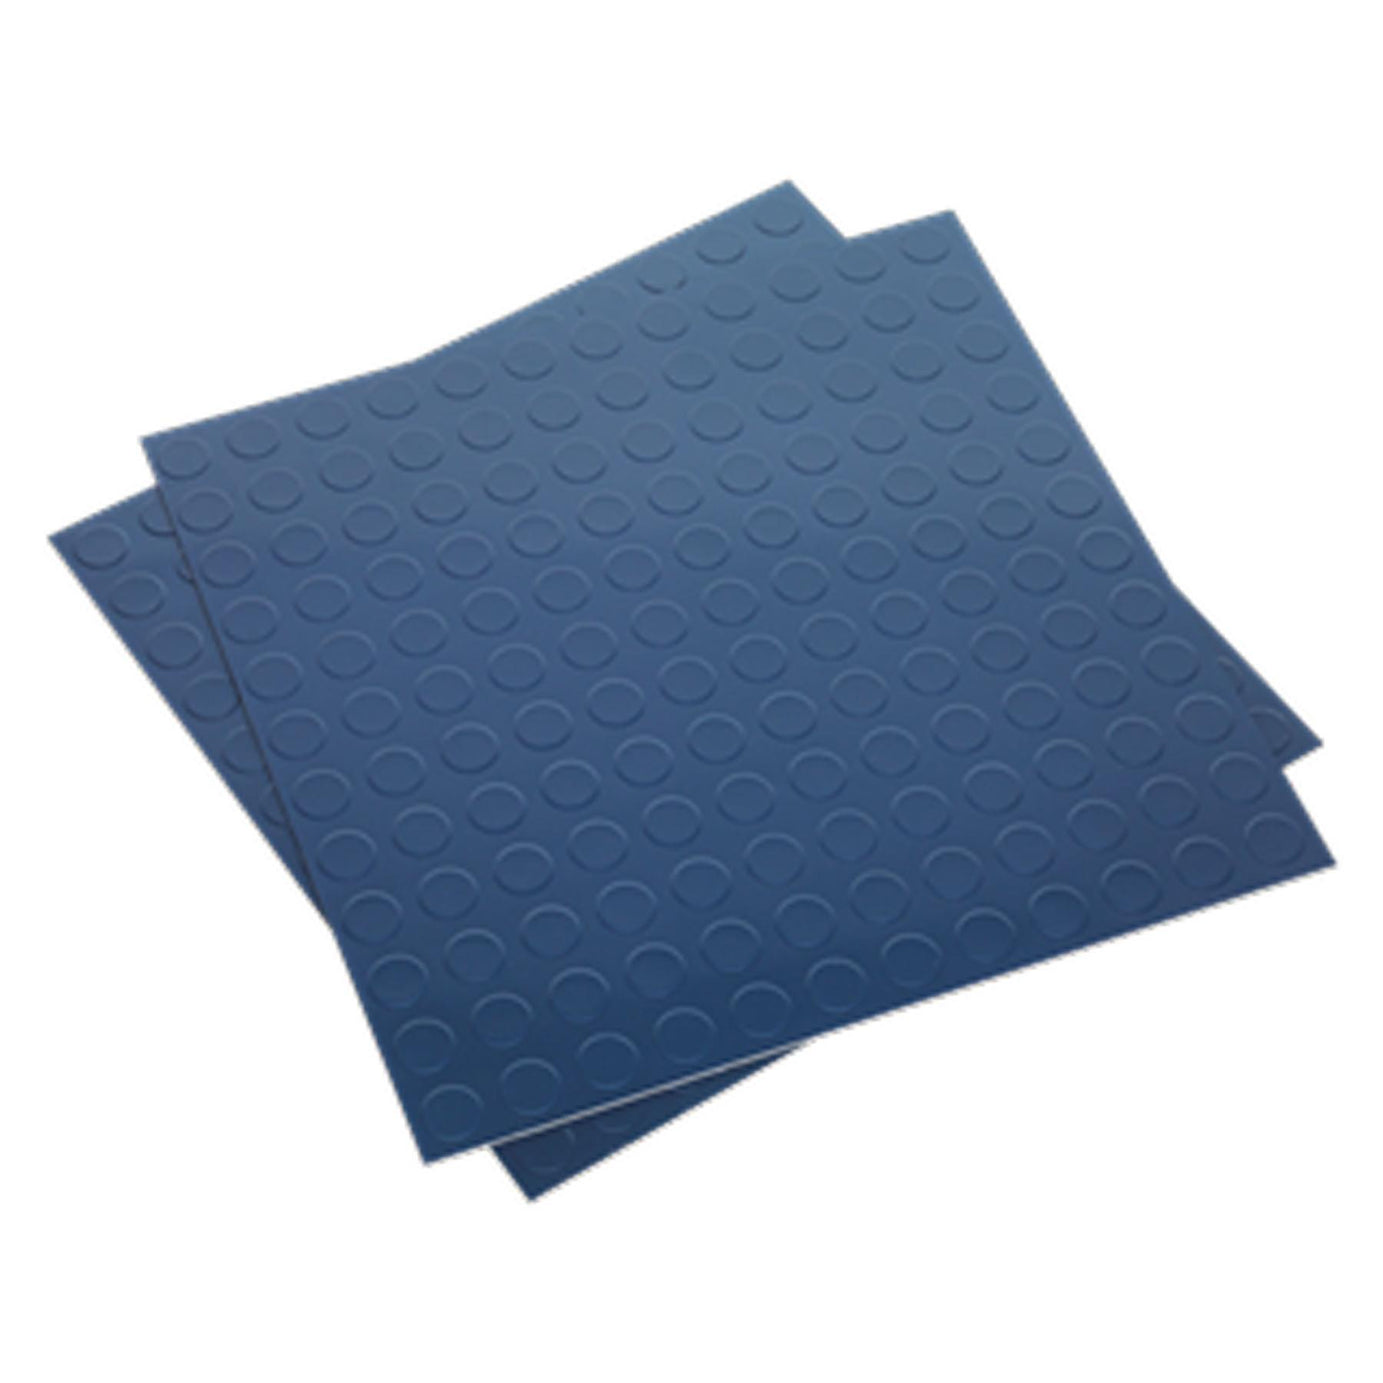 Sealey Vinyl Floor Tile Peel & Stick Backing - Blue Coin Pk of 16